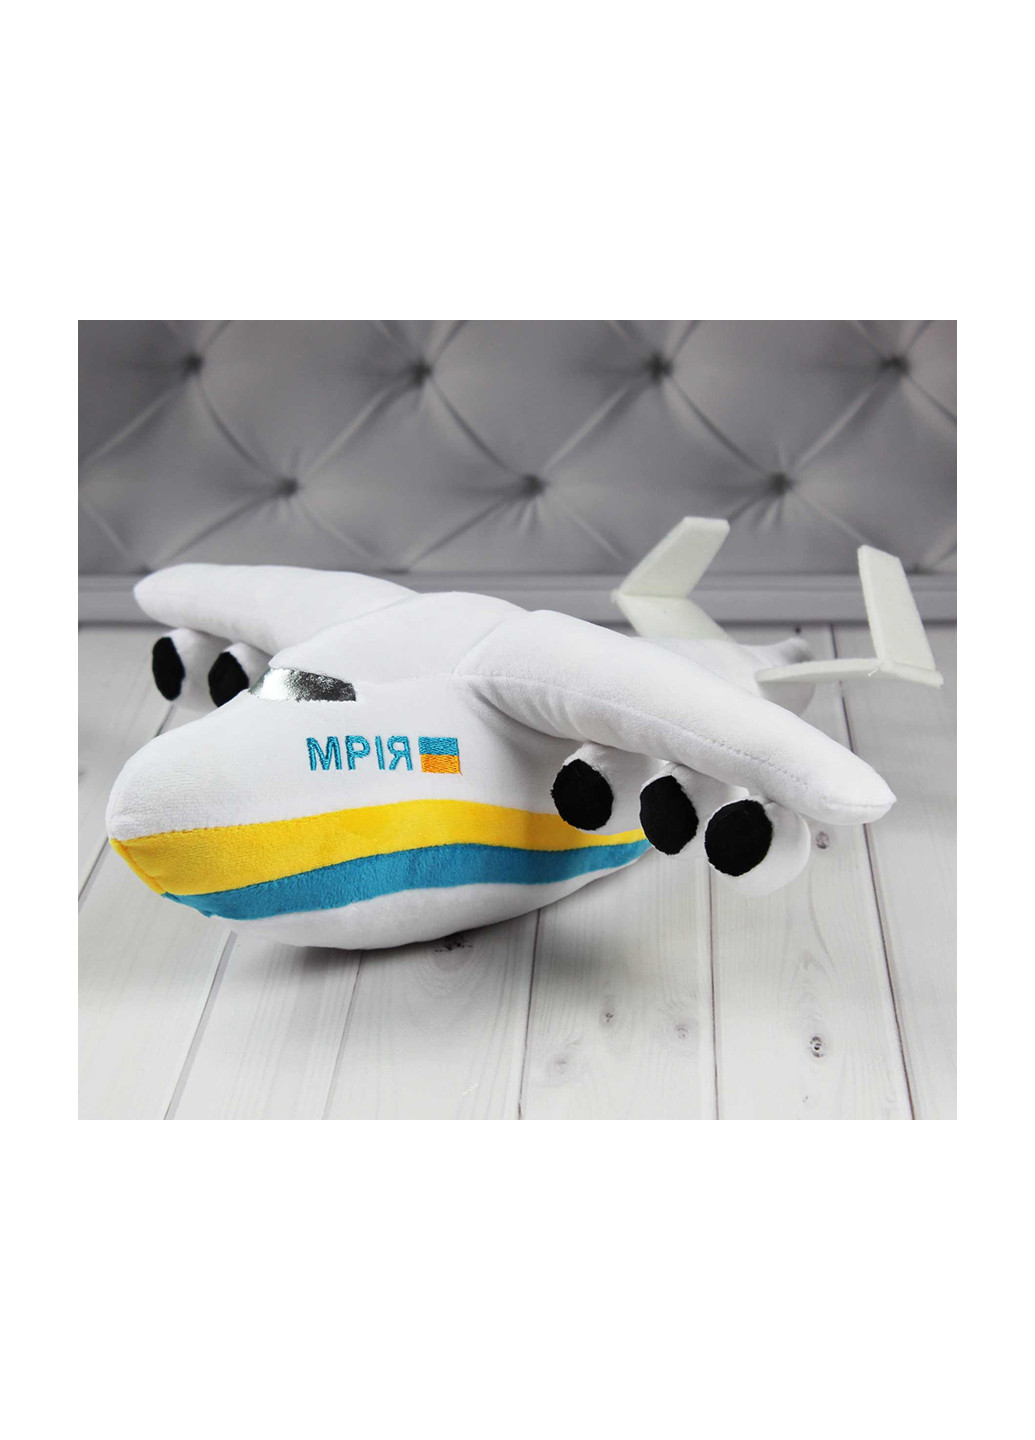 Самолет "Мрия", 41 см 00970-51 Копиця (256736800)